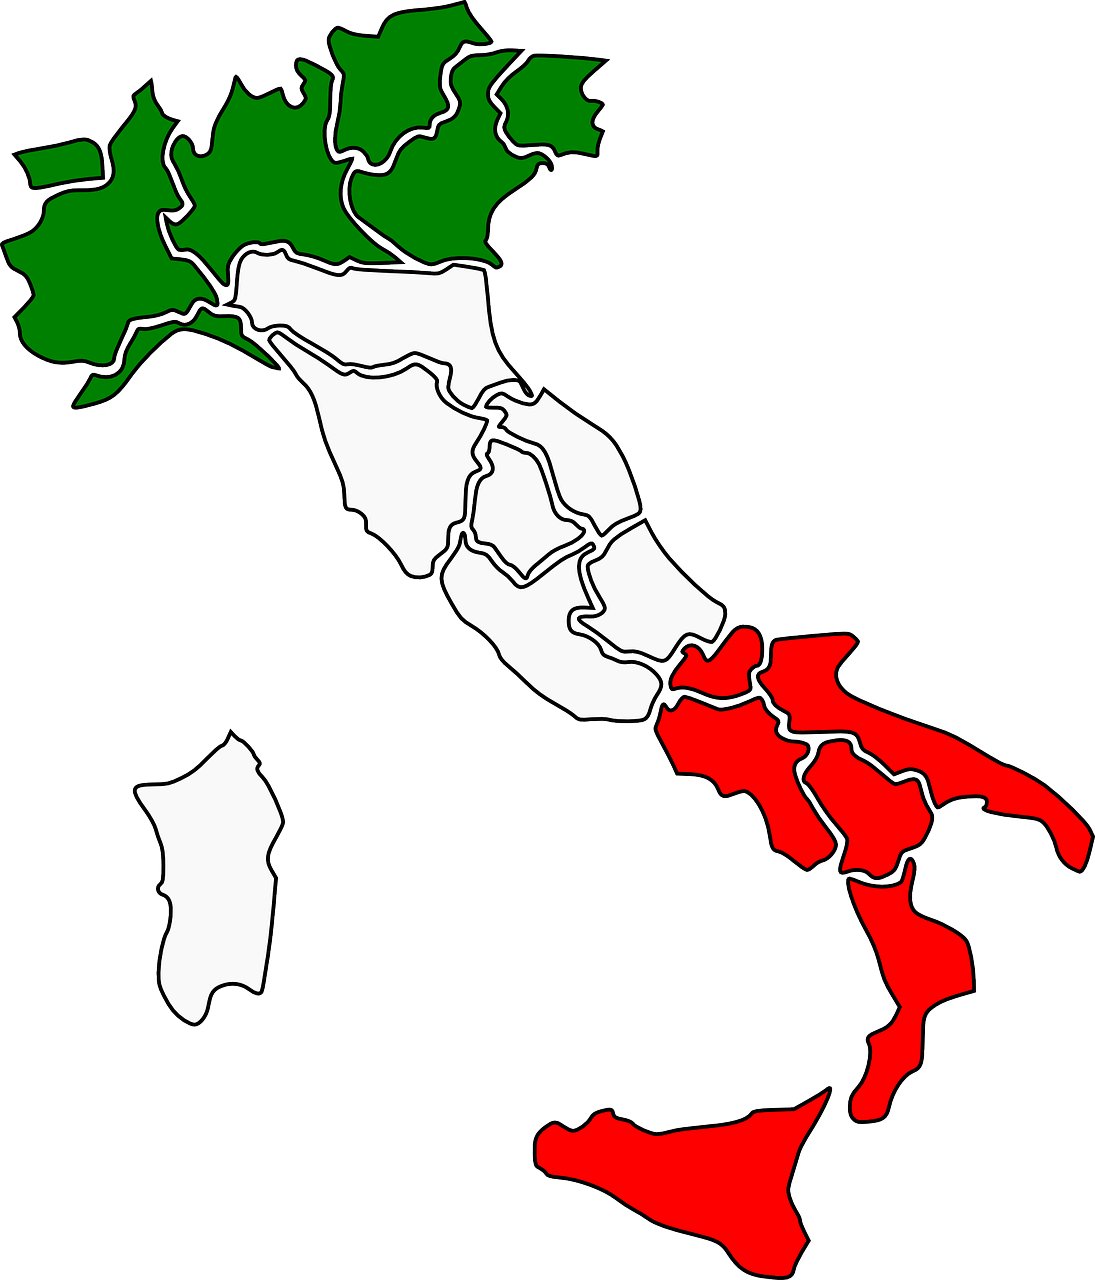 Mercato residenziale italiano